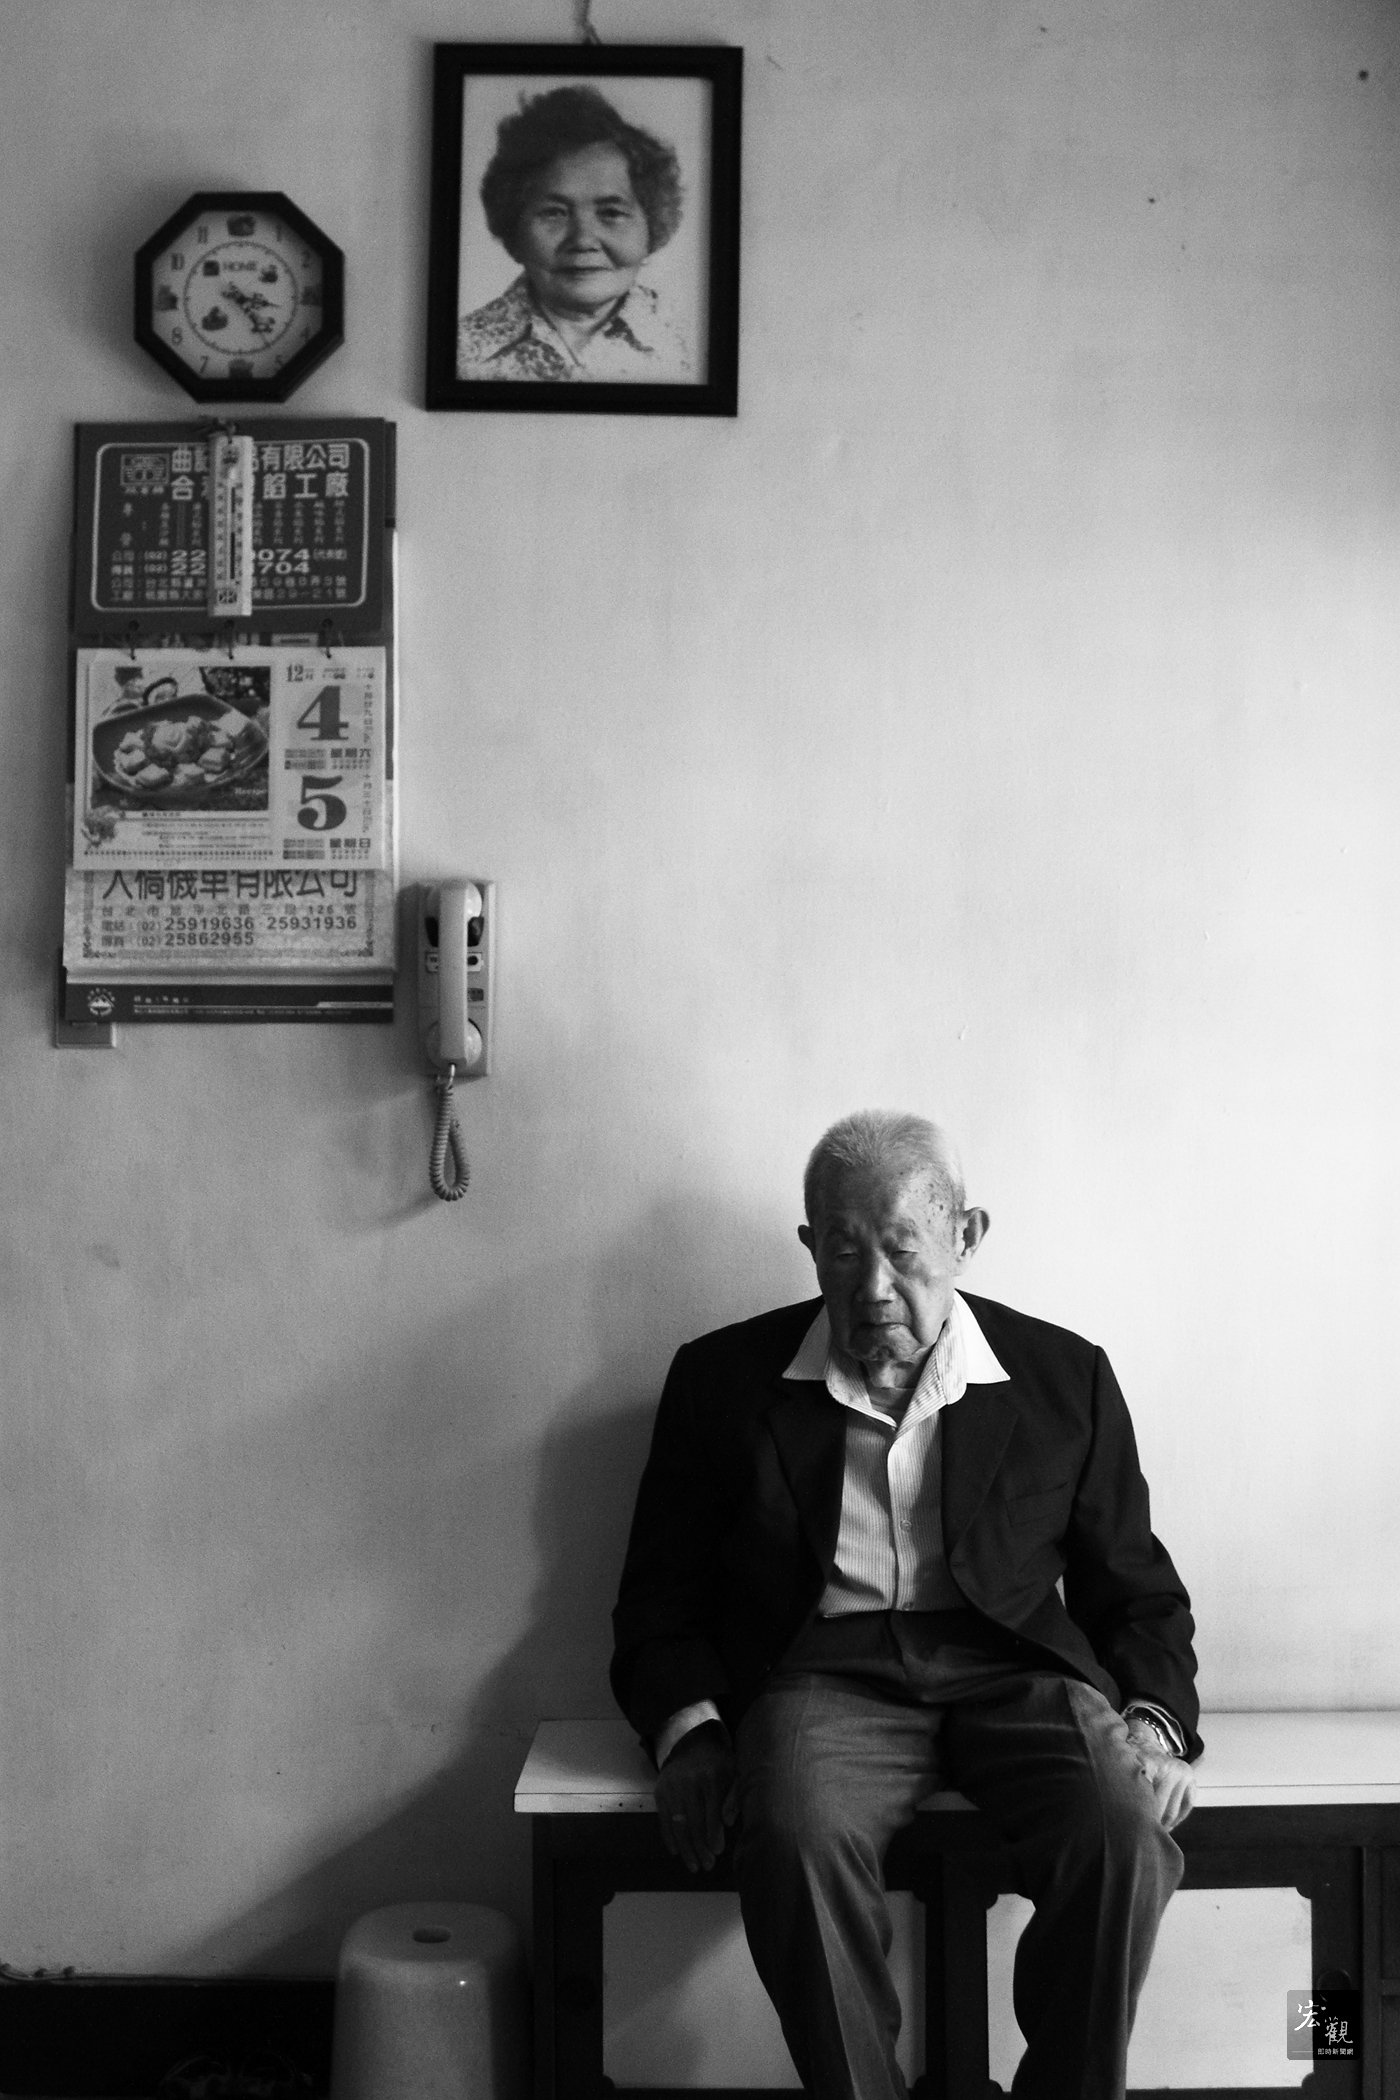 张国耀拍摄老爷爷坐在已逝老伴照片前 的画面，赢得台湾新闻摄影研究会主办的 2011年台湾新闻摄影大赛肖像类第三名。